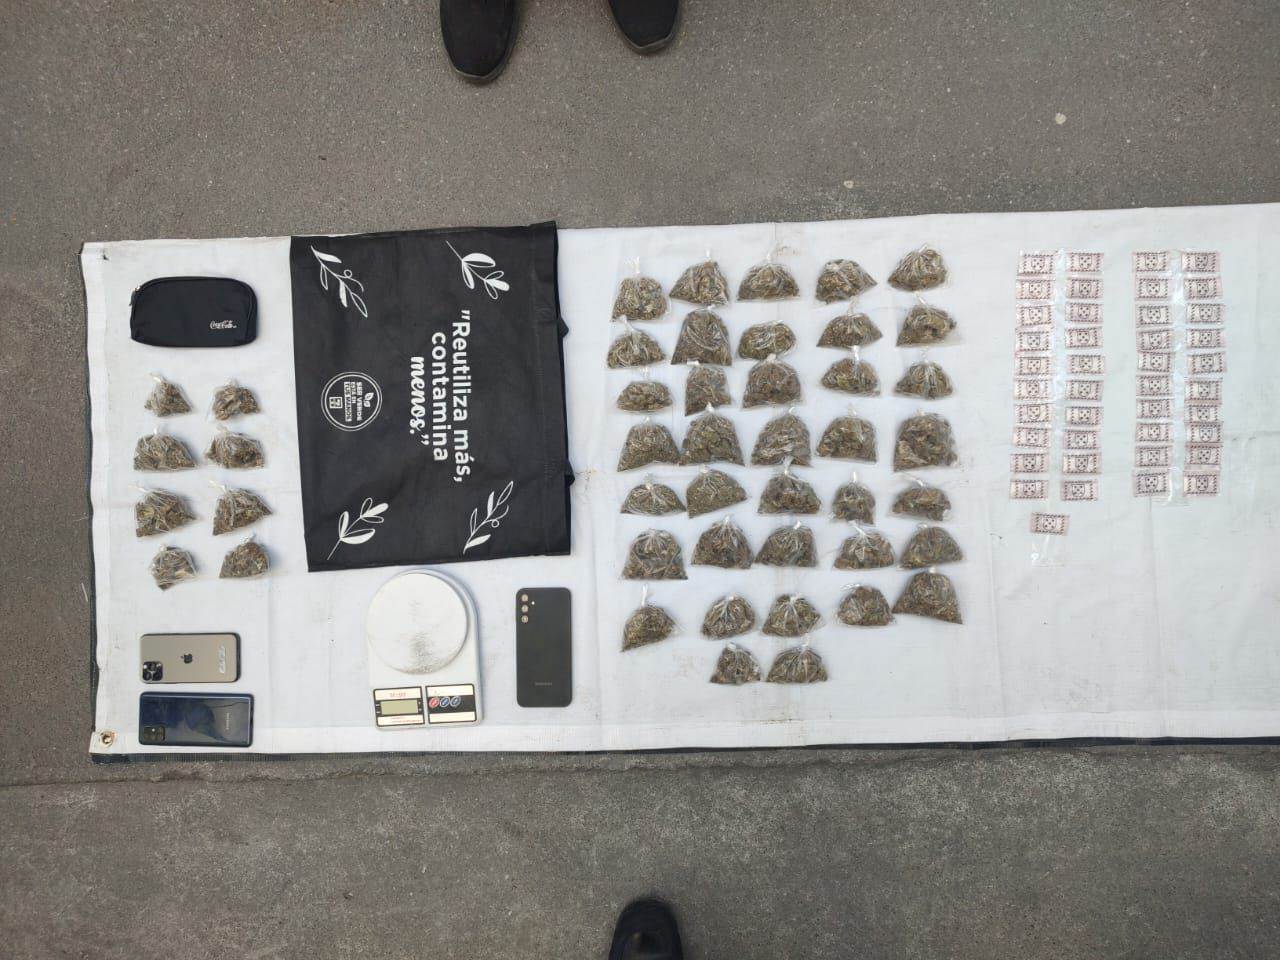 Dos presuntos vendedores de estupefacientes fueron detenidos por elementos de Fuerza Civil, quienes les aseguraron dosis de droga, un vehículo, en Escobedo.